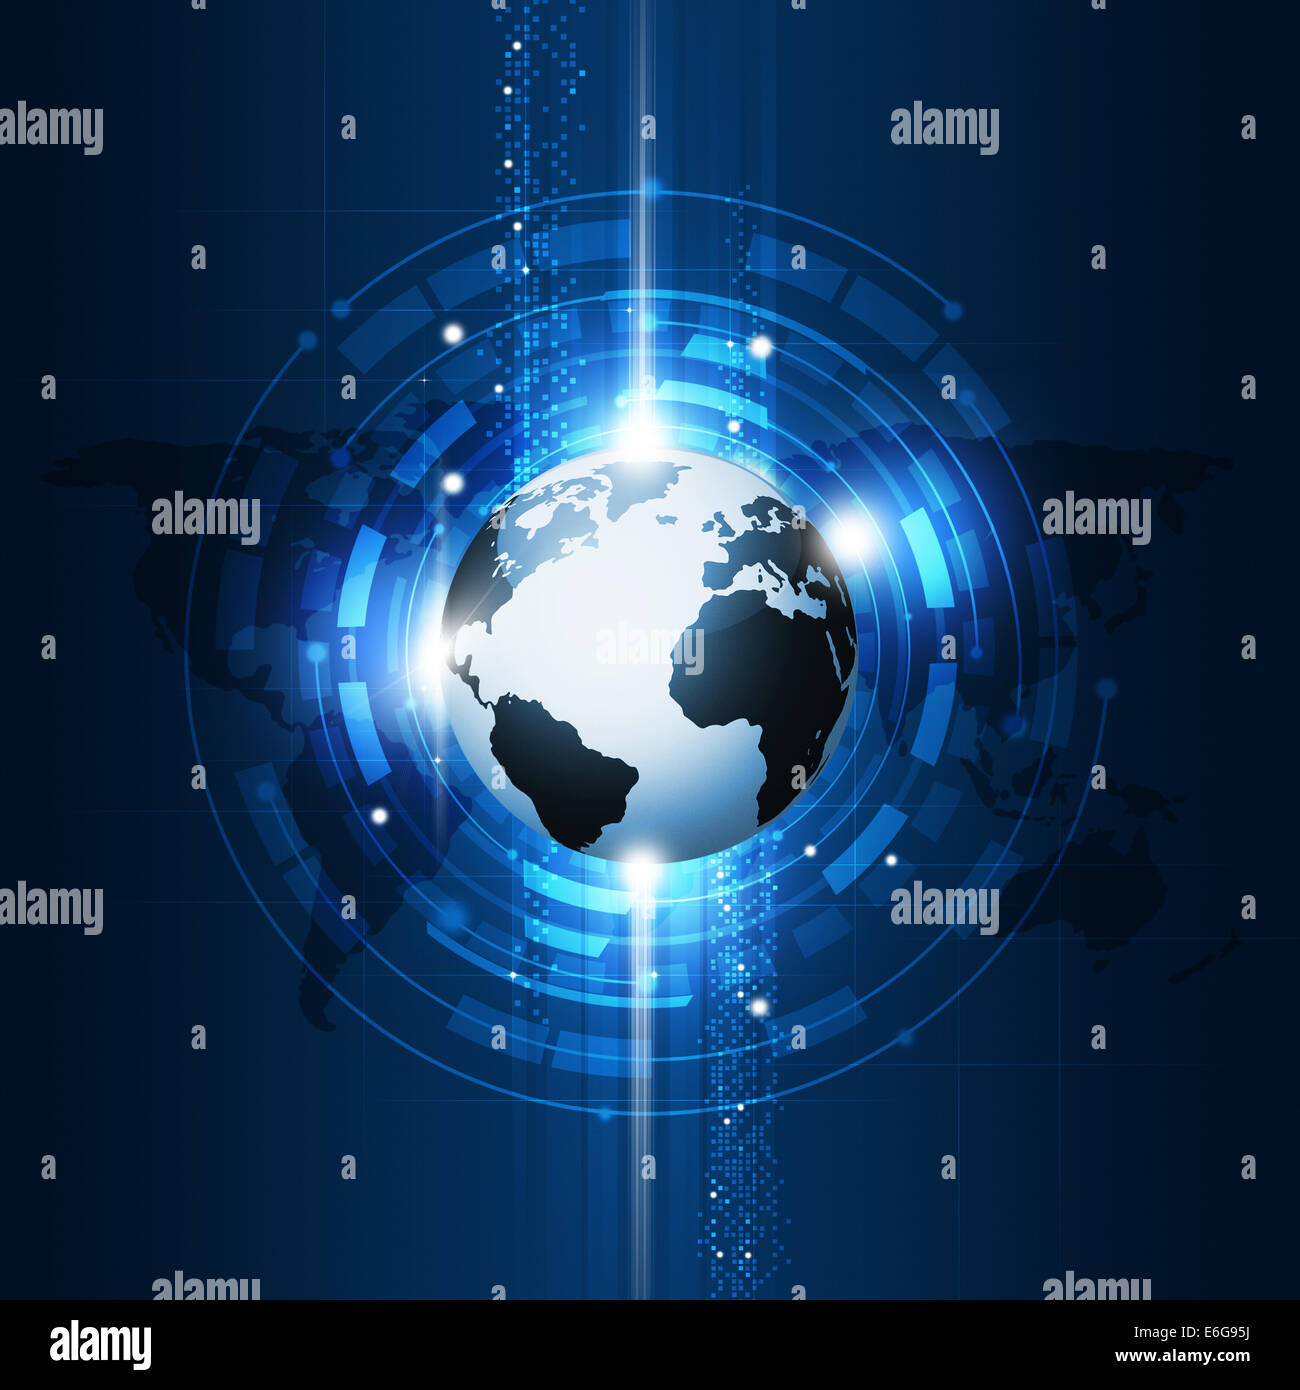 Abstract global business concetto di comunicazione con tecnologia a sfondo blu Foto Stock